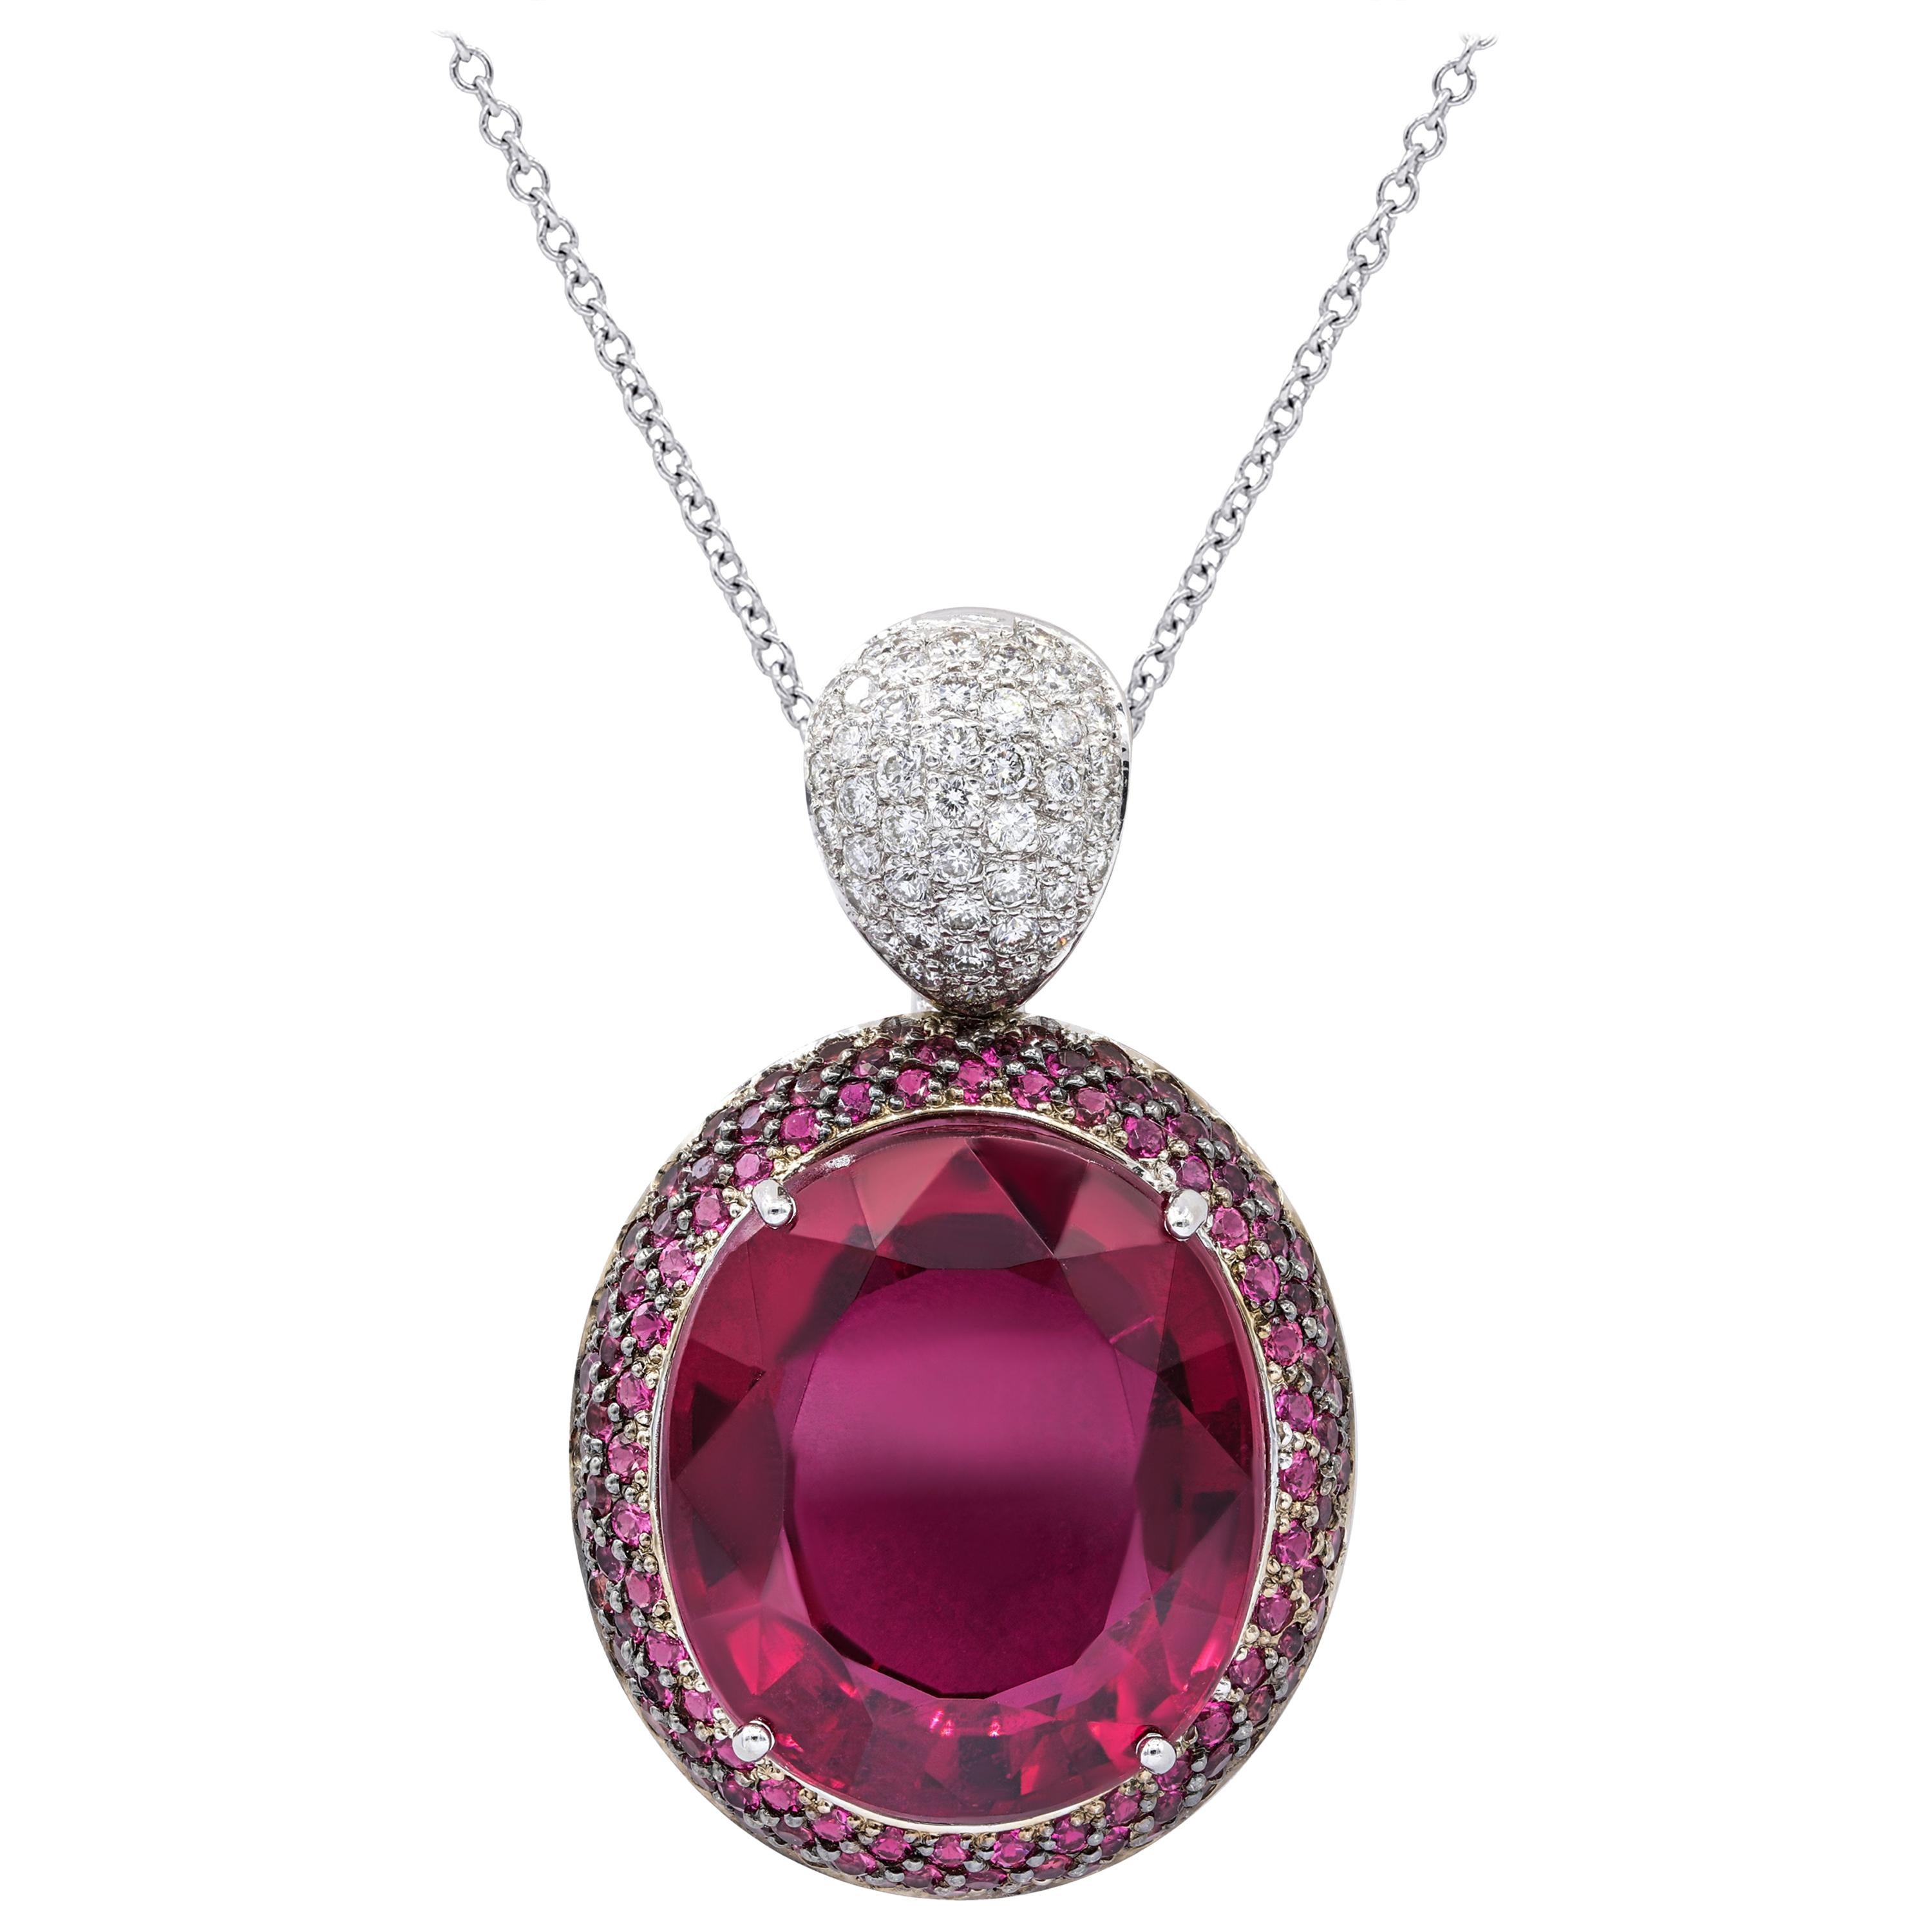  Collier pendentif en tourmaline rose et diamants avec tourmaline de forme ovale